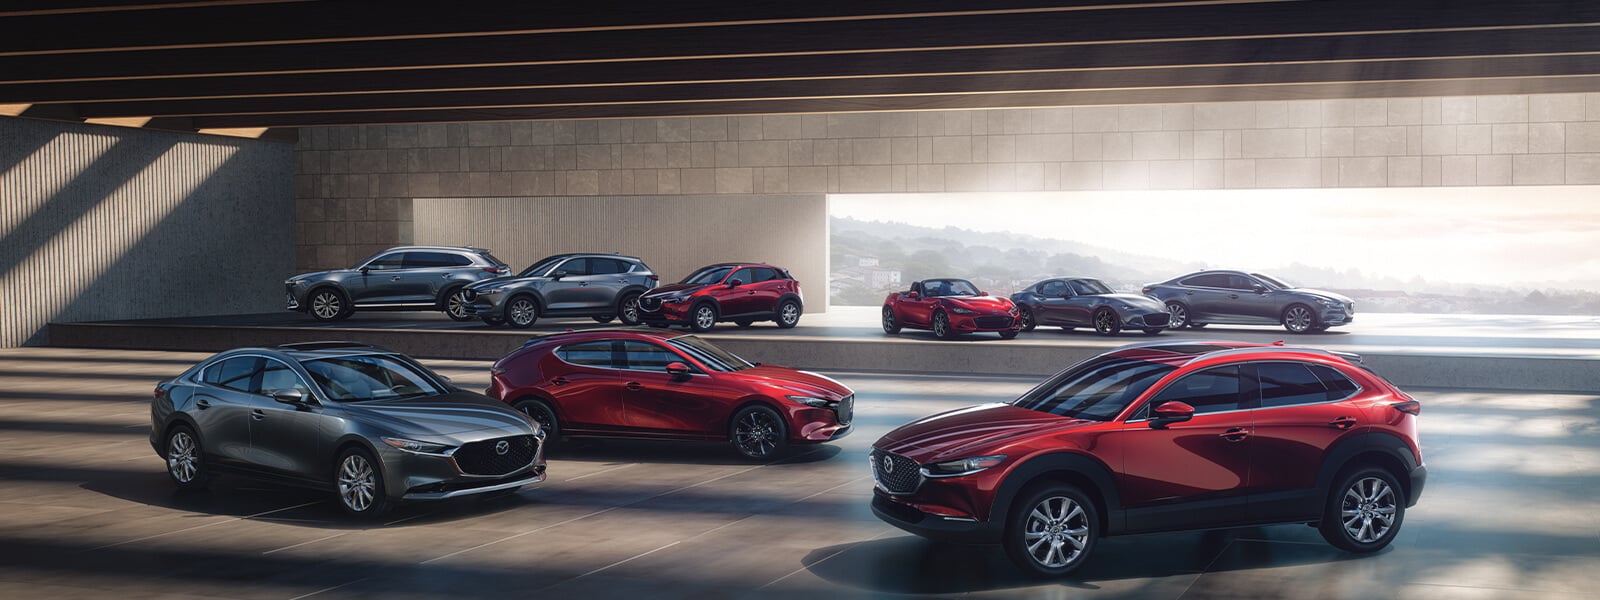 Divers modèles Mazda dans une salle d’exposition, dont une berline Mazda3, une Mazda6 et un CX-5.